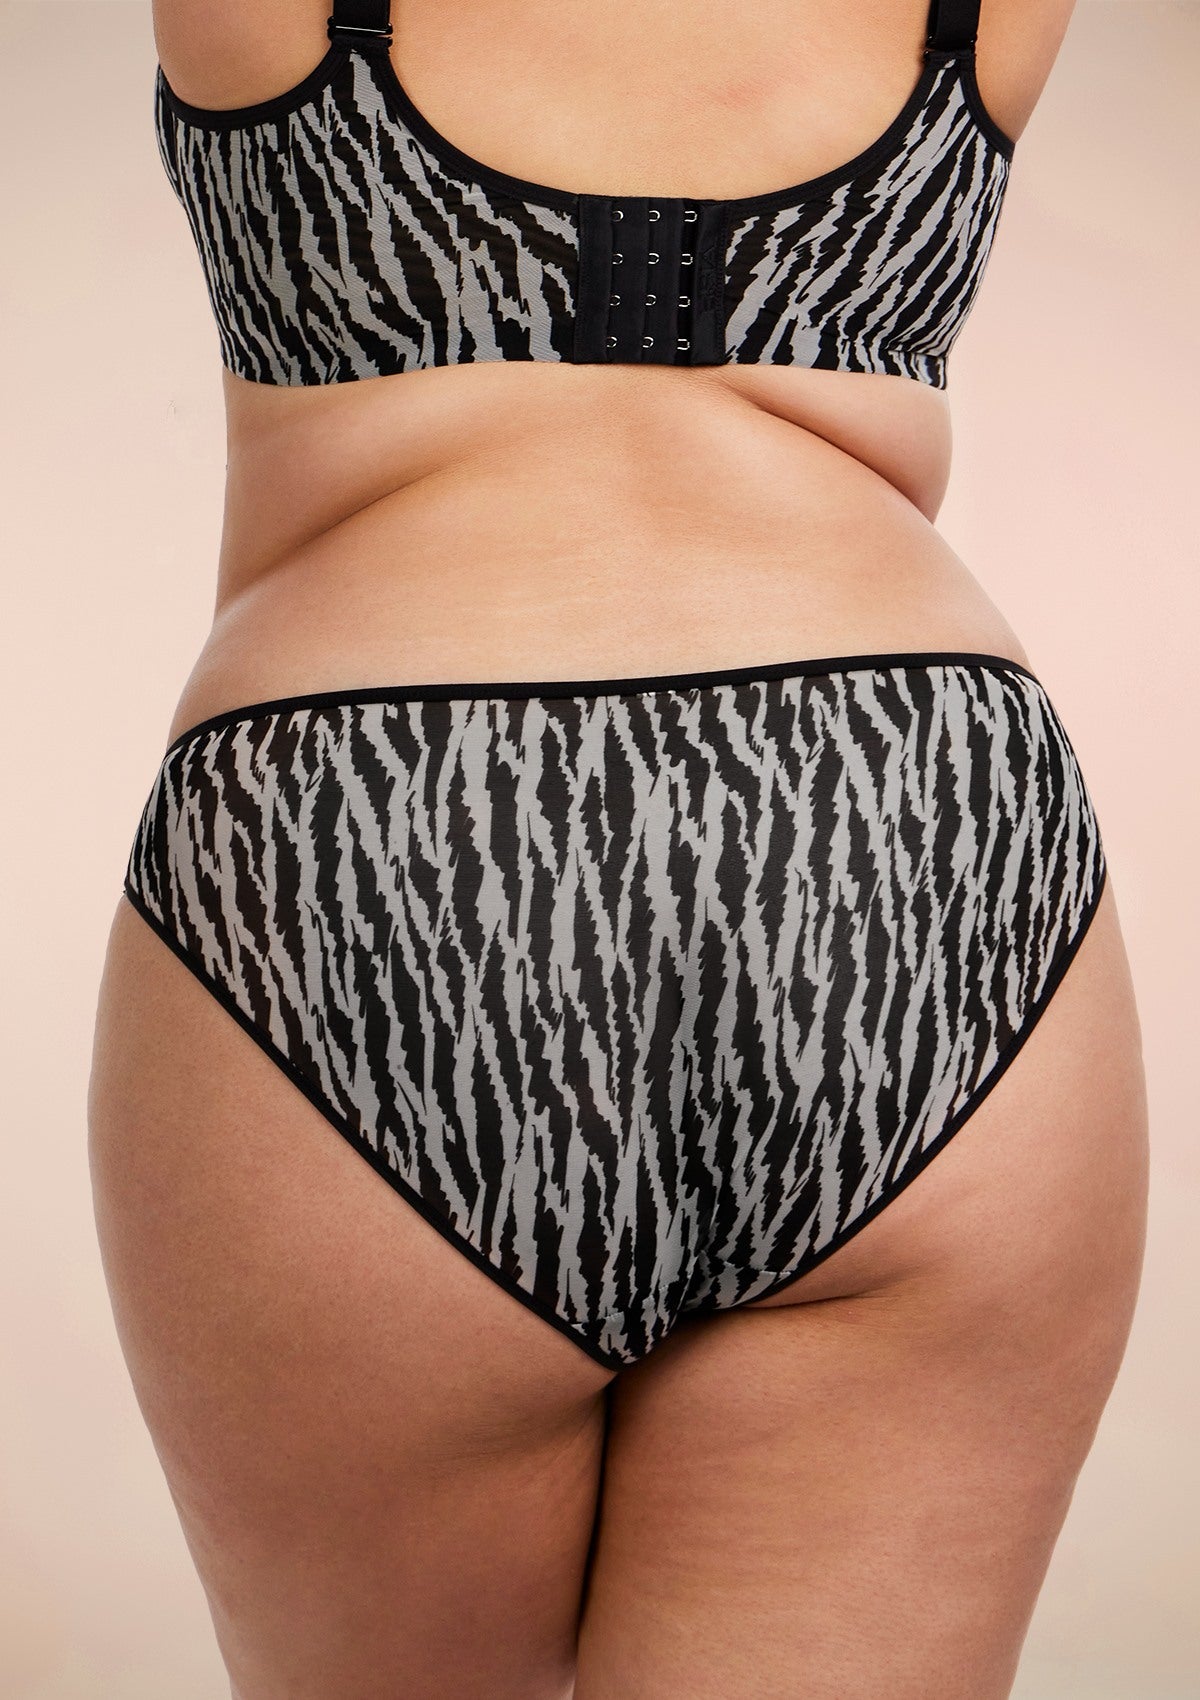 HSIA Breathable Sexy Feminine Lace Mesh Bikini Underwear - L / Black